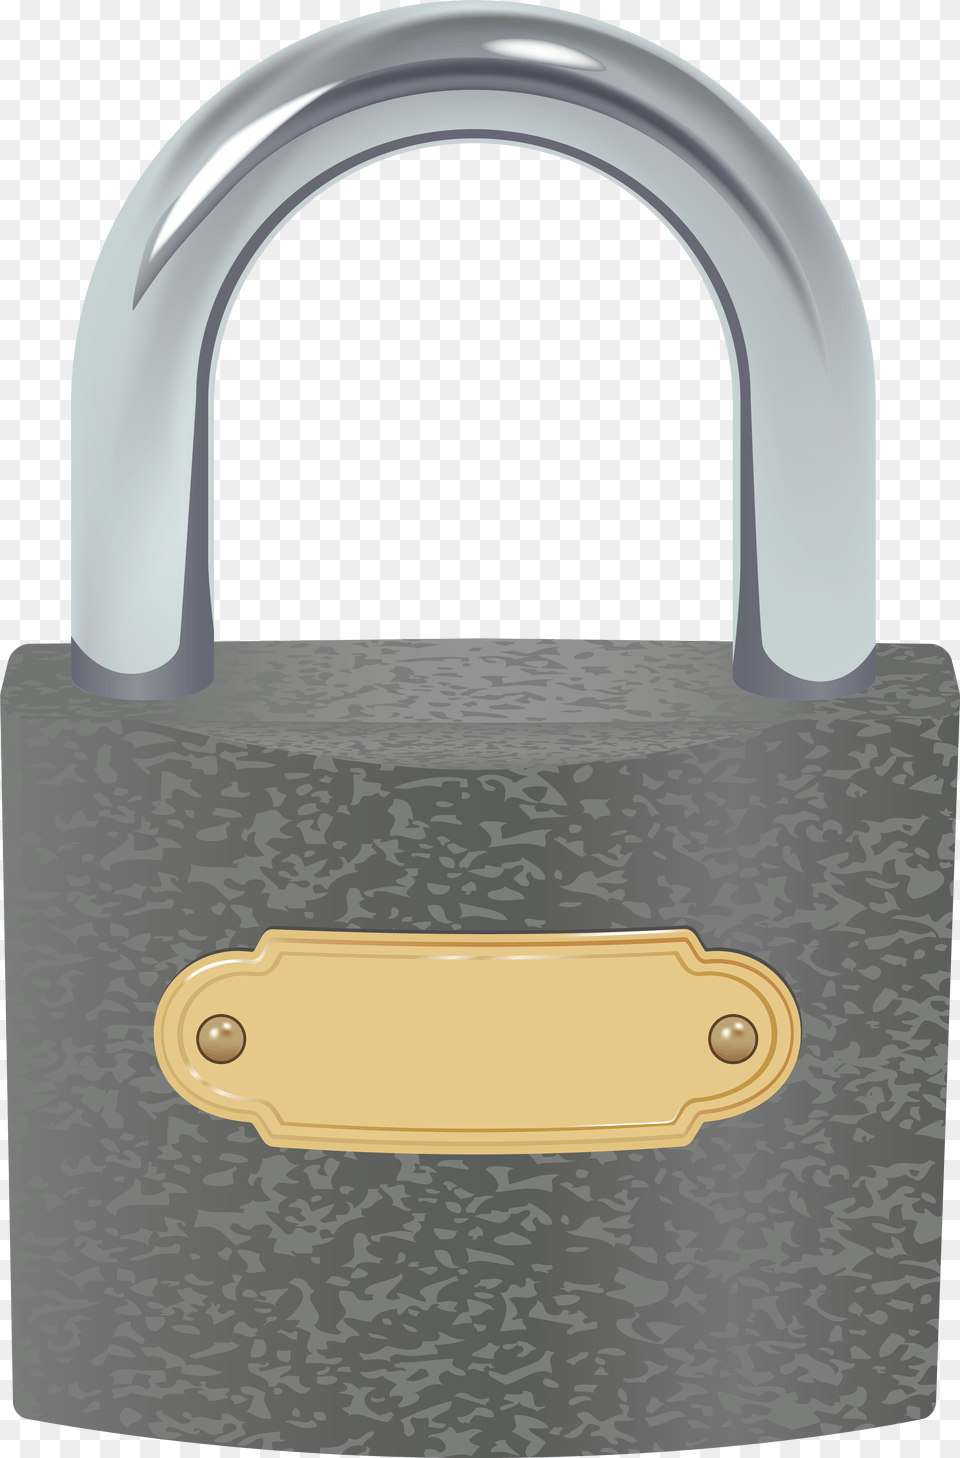 Padlock Clip Art, Lock Png Image